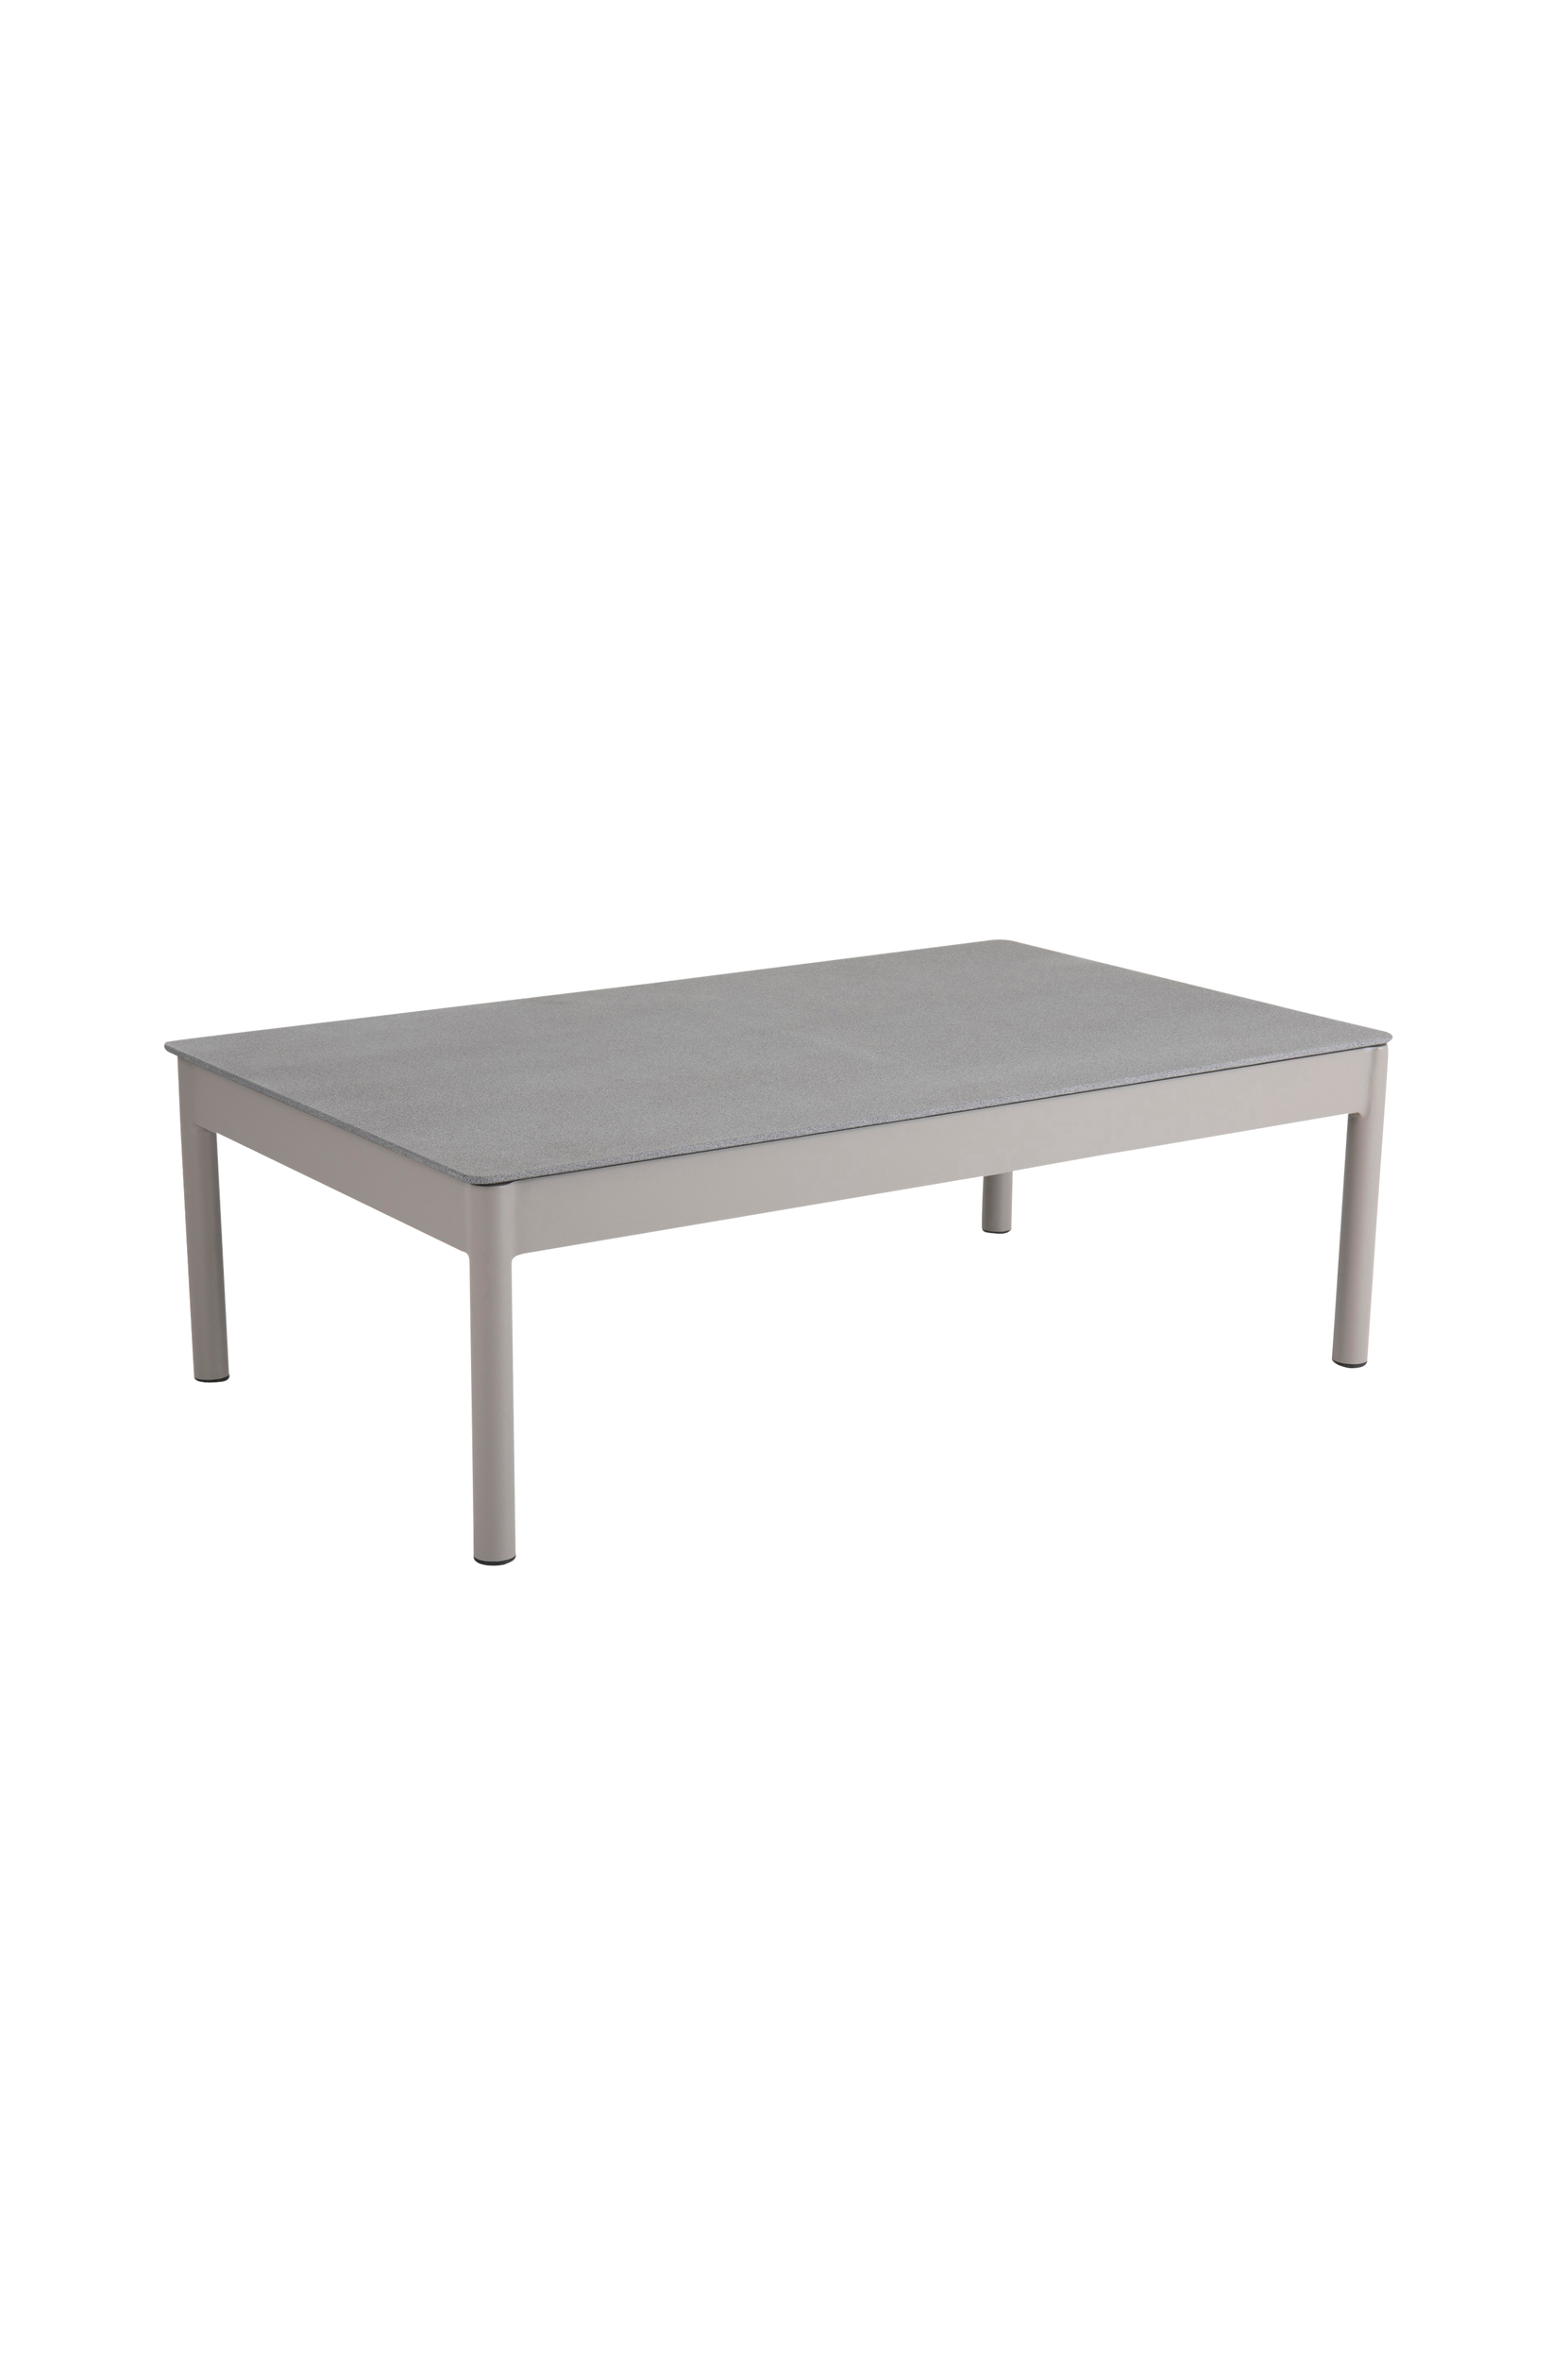 Pöytä Muro, 76 x 121 cm, Brafab